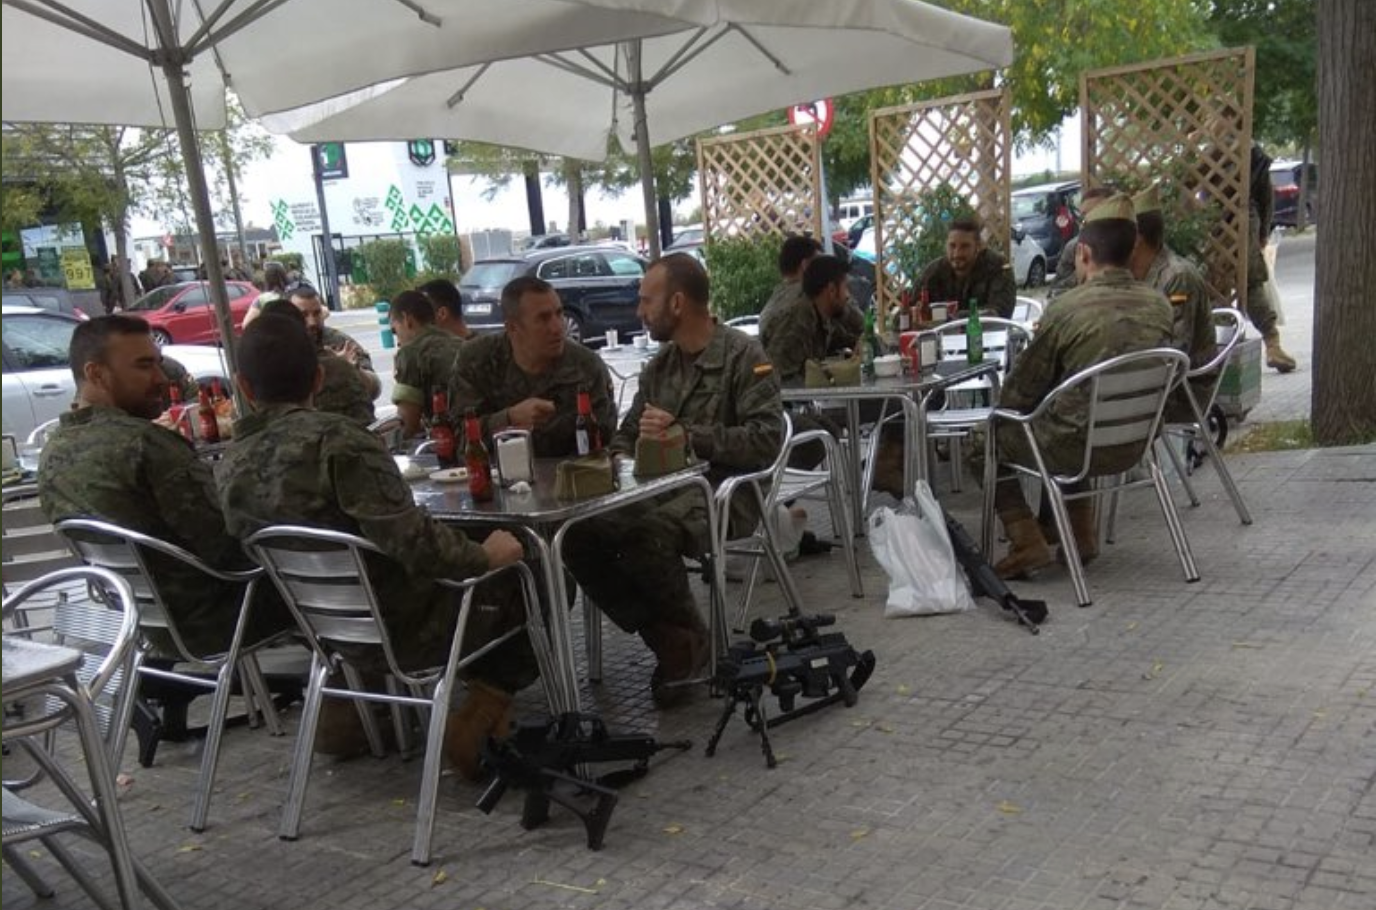 Legionaris en una terrassa de Vilafranca